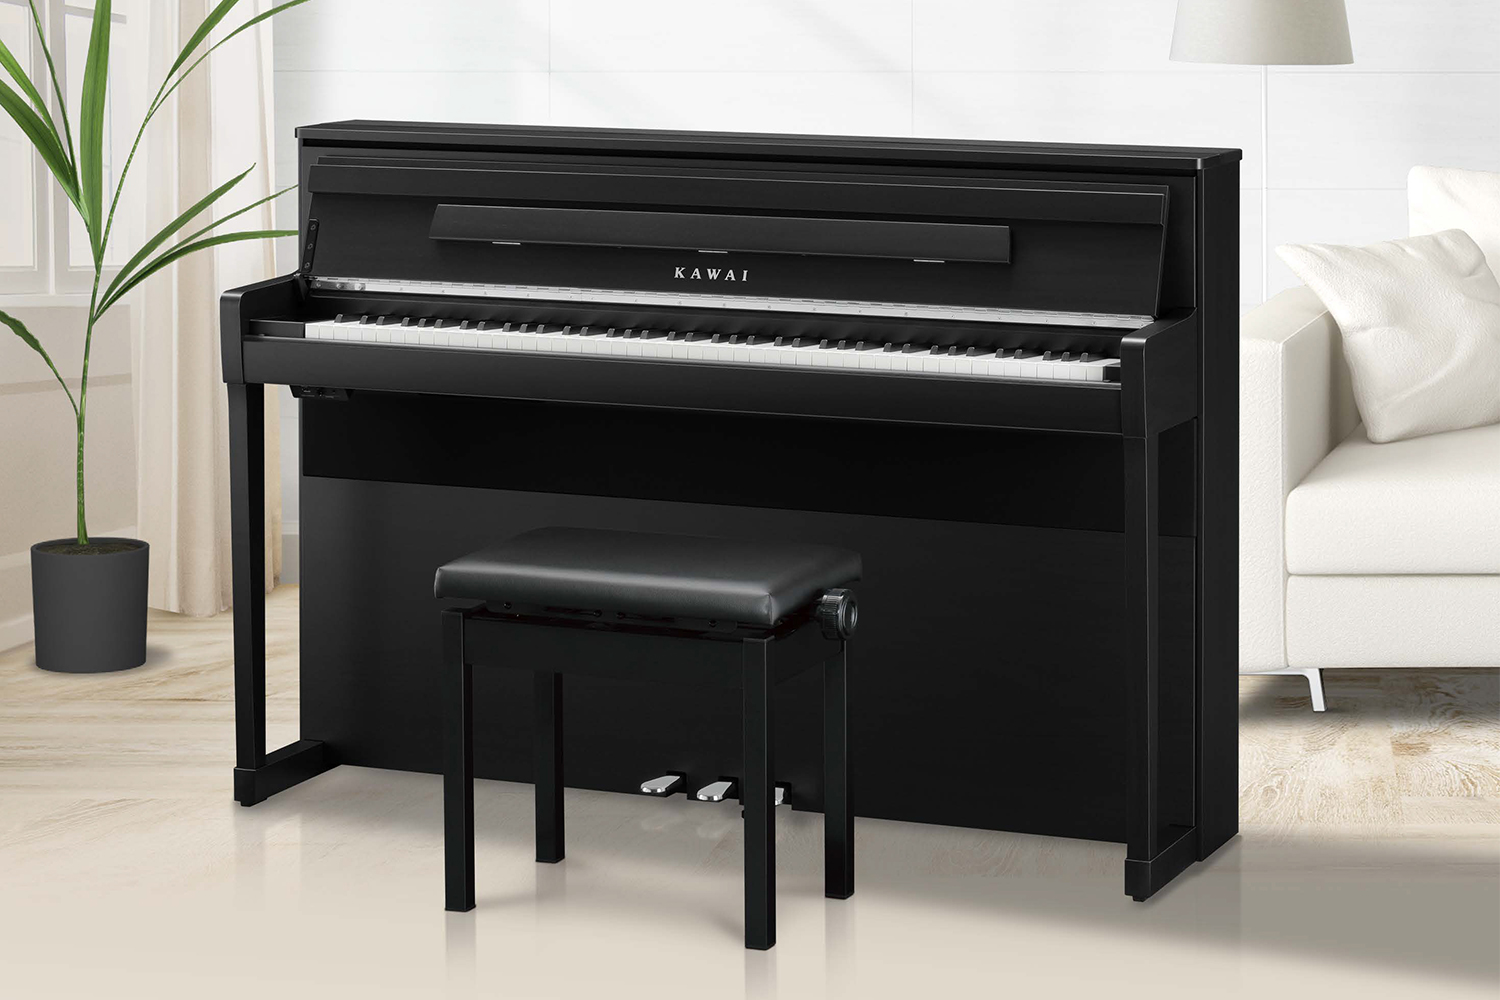 *KAWAI新製品電子ピアノCA9900GP3/10(火)発売決定です 【KAWAI】と【島村楽器】のコラボレーション新製品【CA9900GP】が発売決定いたしました！ デザイン、サウンド、鍵盤、すべてを一新したカワイ電子ピアノ最新モデル「CA9900GP」。 アコースティックピアノの佇まい、グラン […]